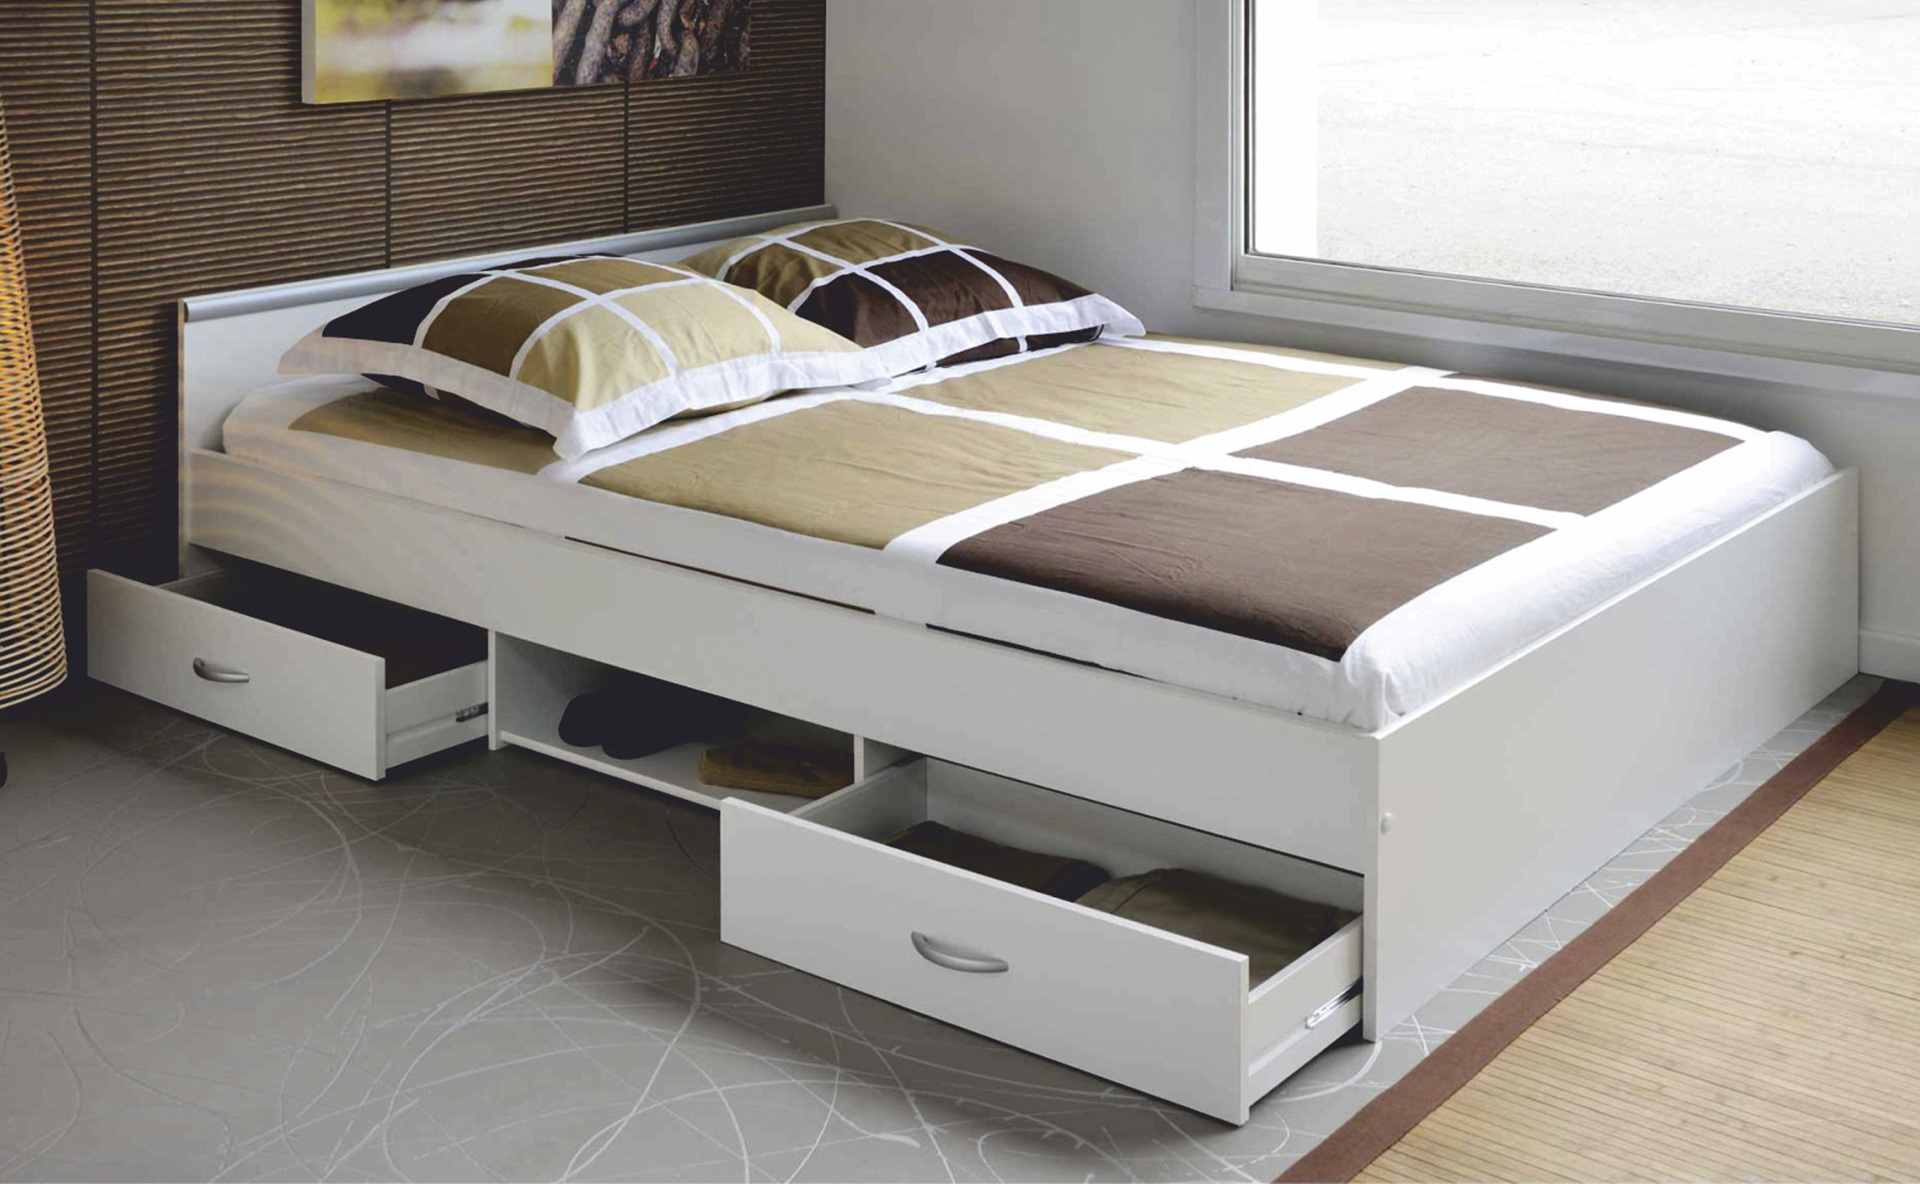 Бывают ли кровати. Кровать икеа с выдвижными ящиками двуспальная. Ikea кровать двуспальная с выдвижными ящиками. Двуспальная выдвижная кровать ikea. Кровать икеа с выдвижными ящиками 140х200.